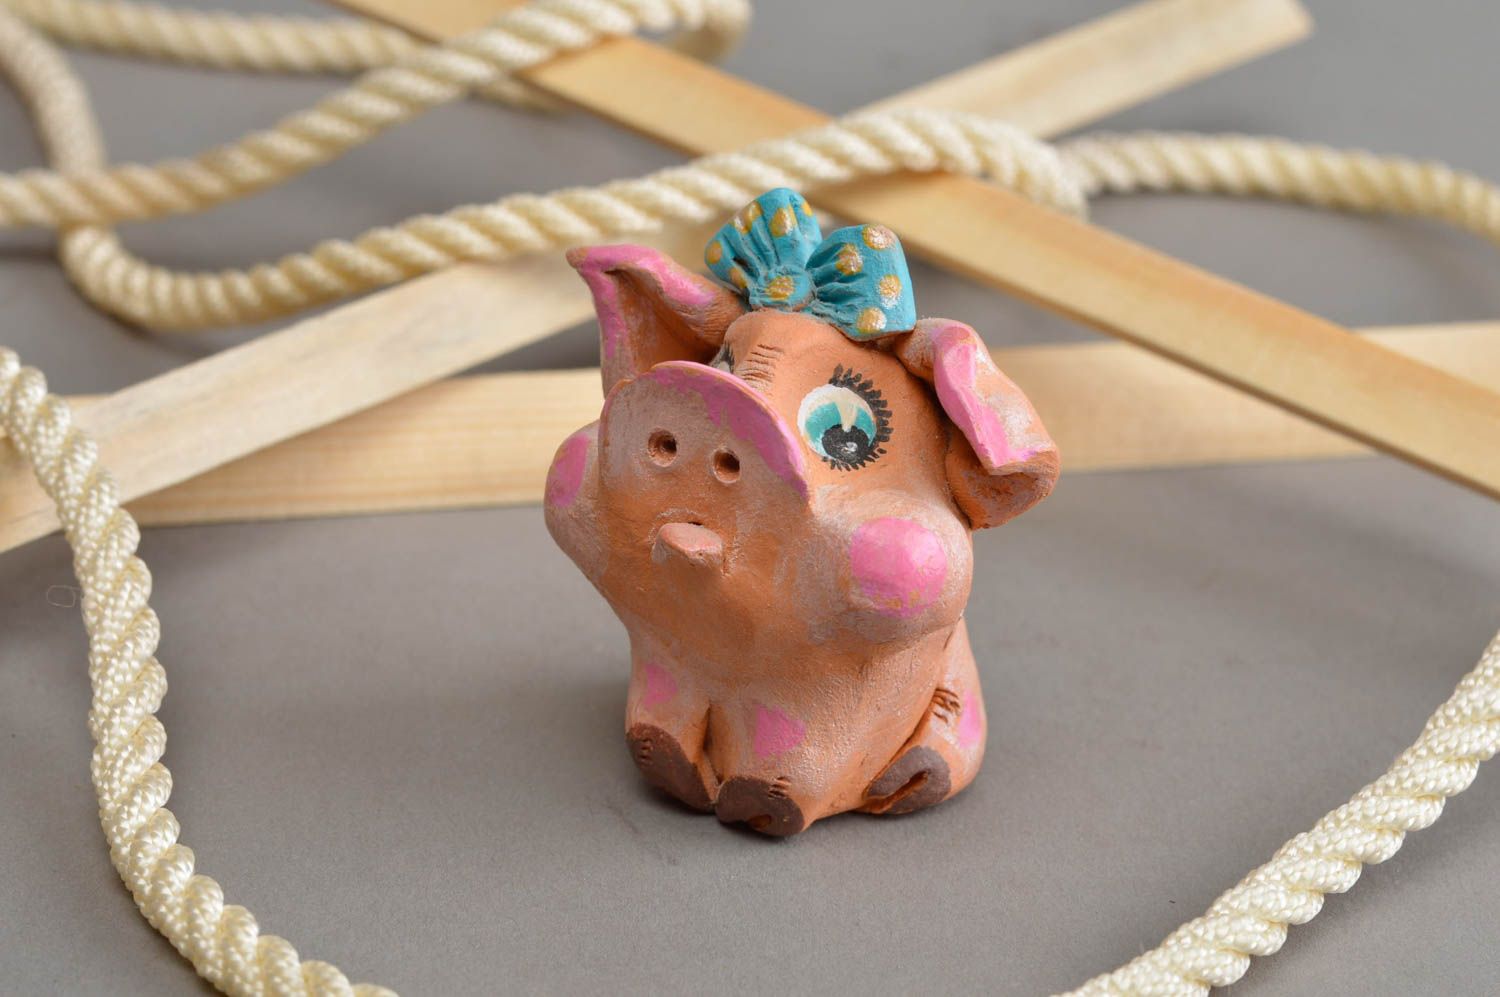 Керамический сувенир ручной работы обиженная свинка с голубым бантиком фото 1